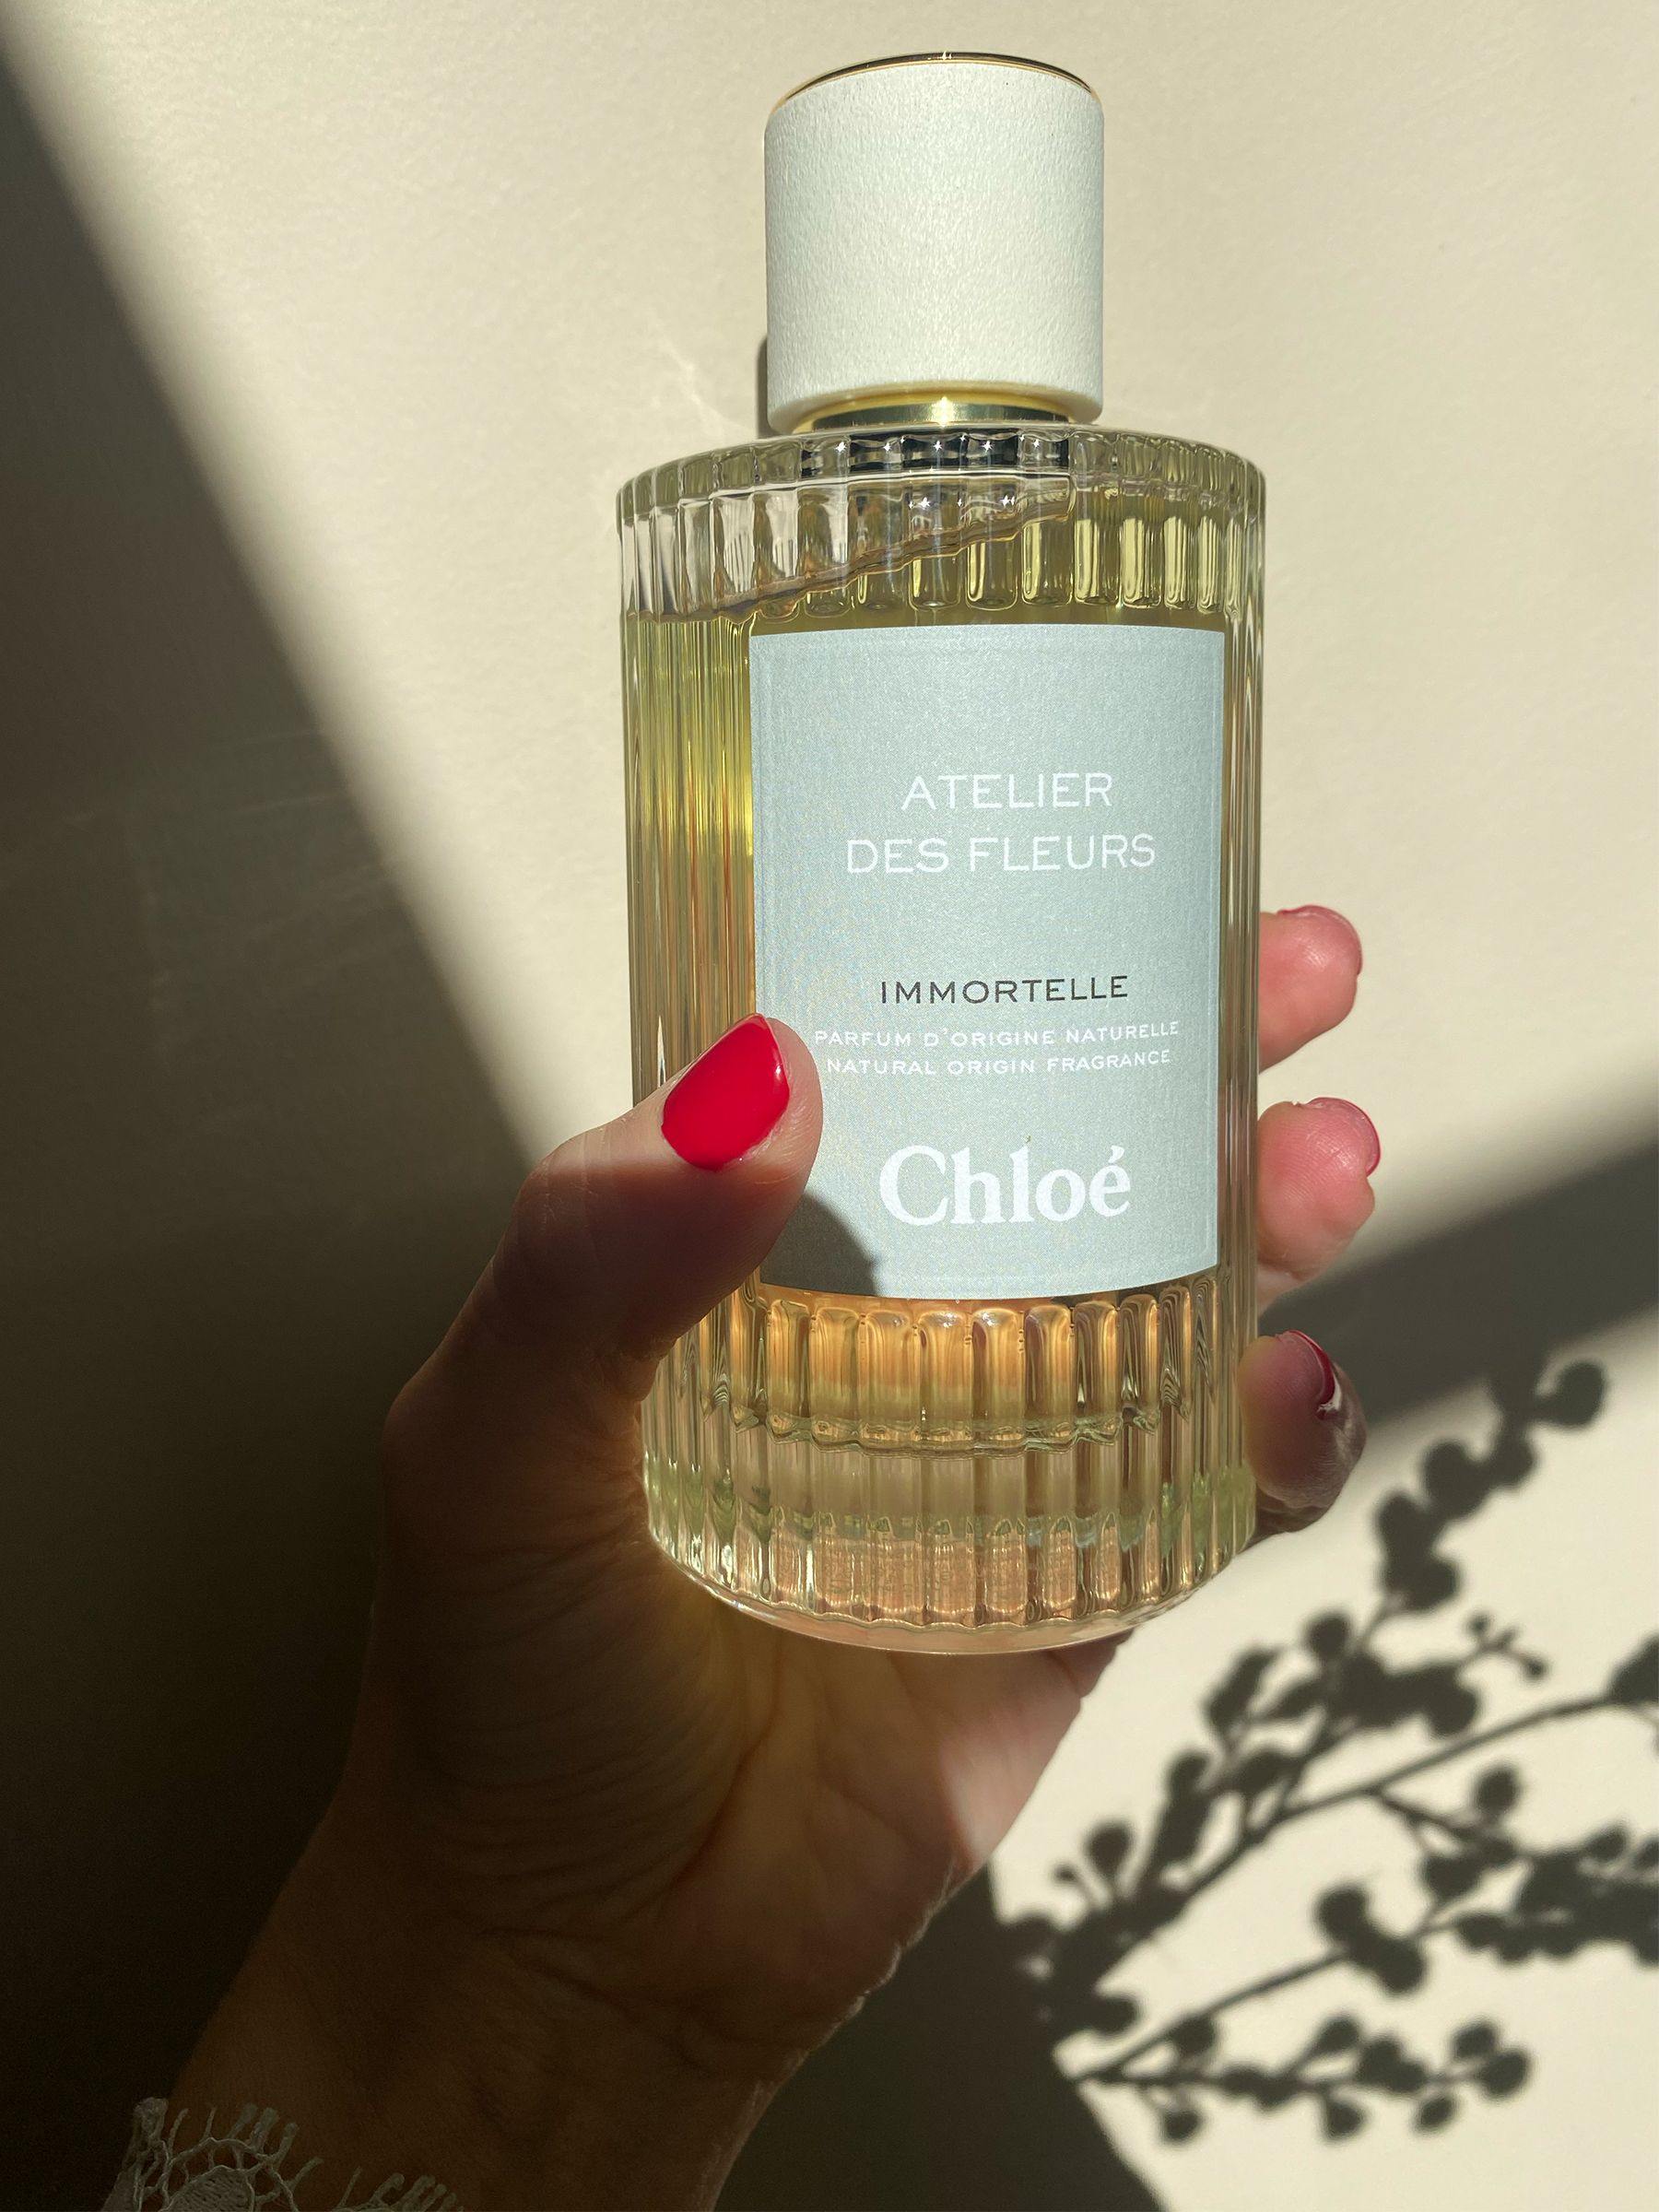 Chloé Atelier des Fleurs Immortelle Eau de Parfum, 50ml